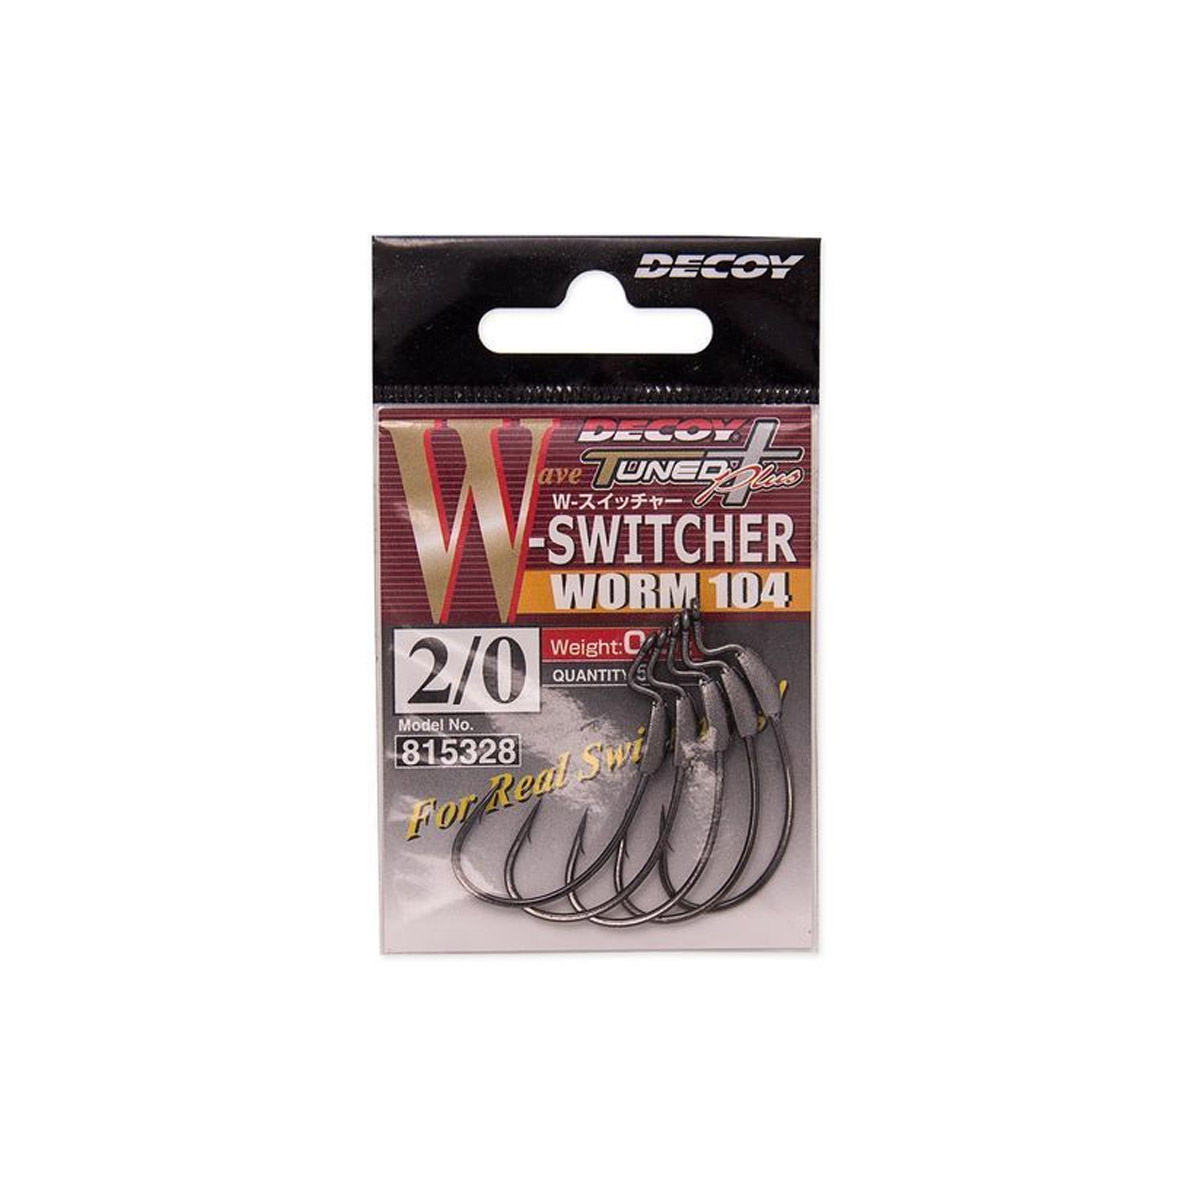 Decoy W-Switcher Worm 104 